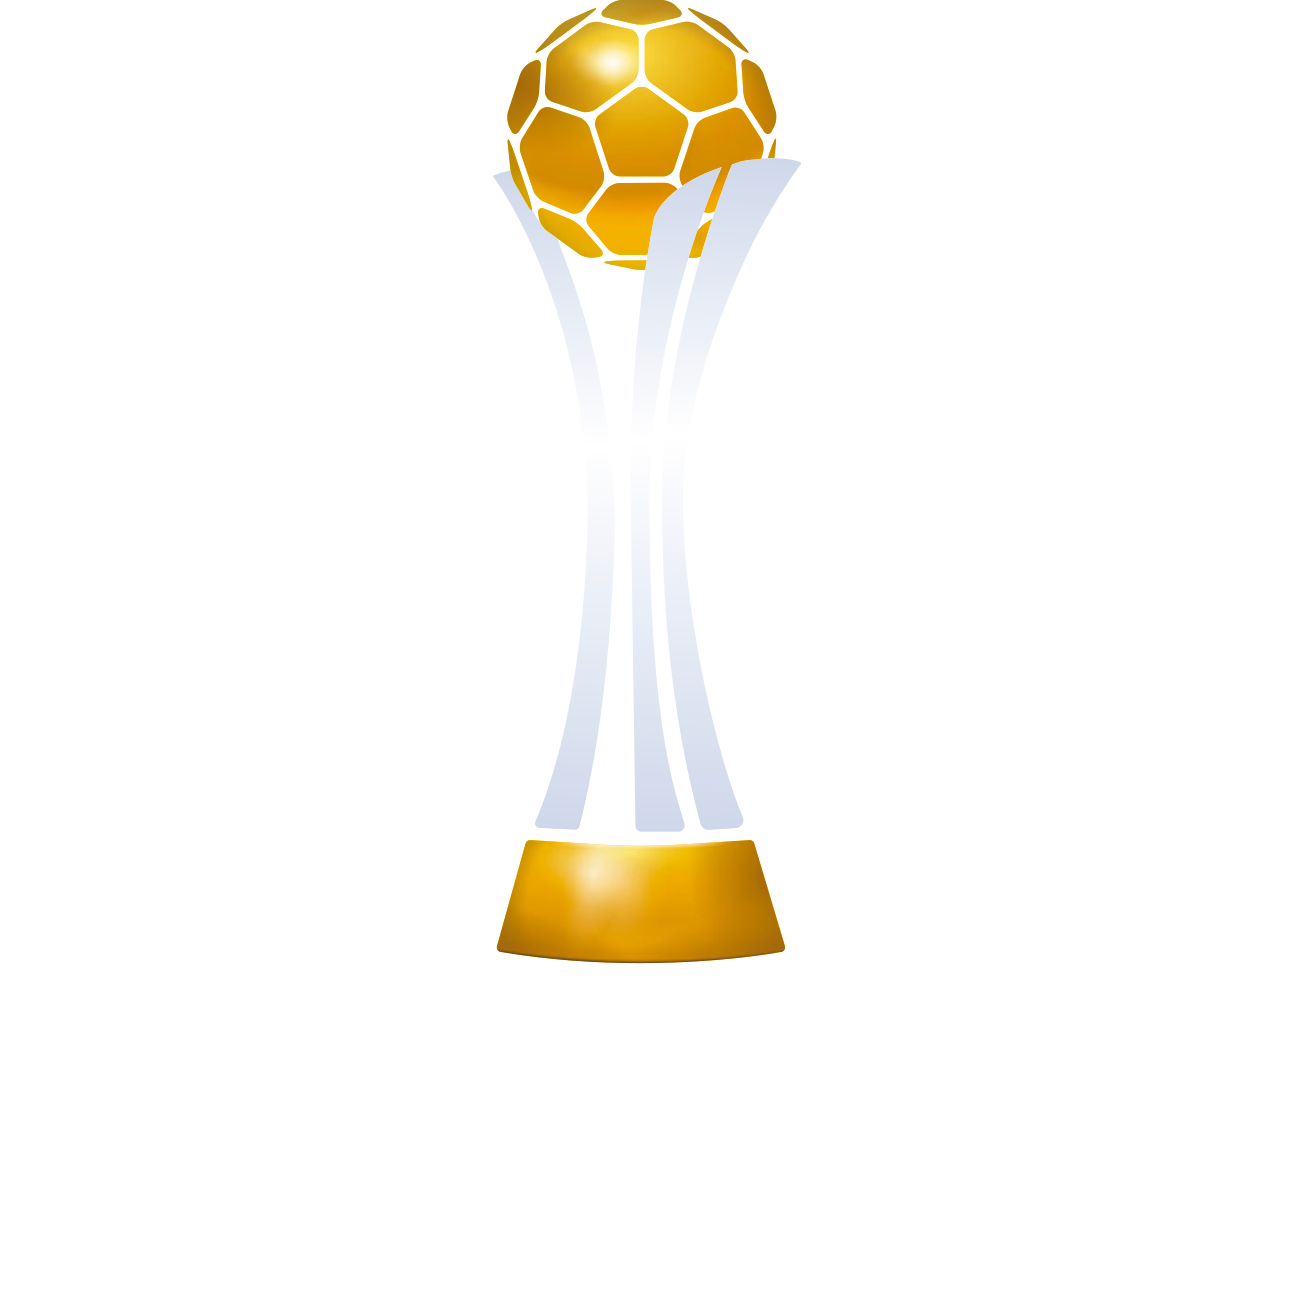 Клубный чемпионат мира